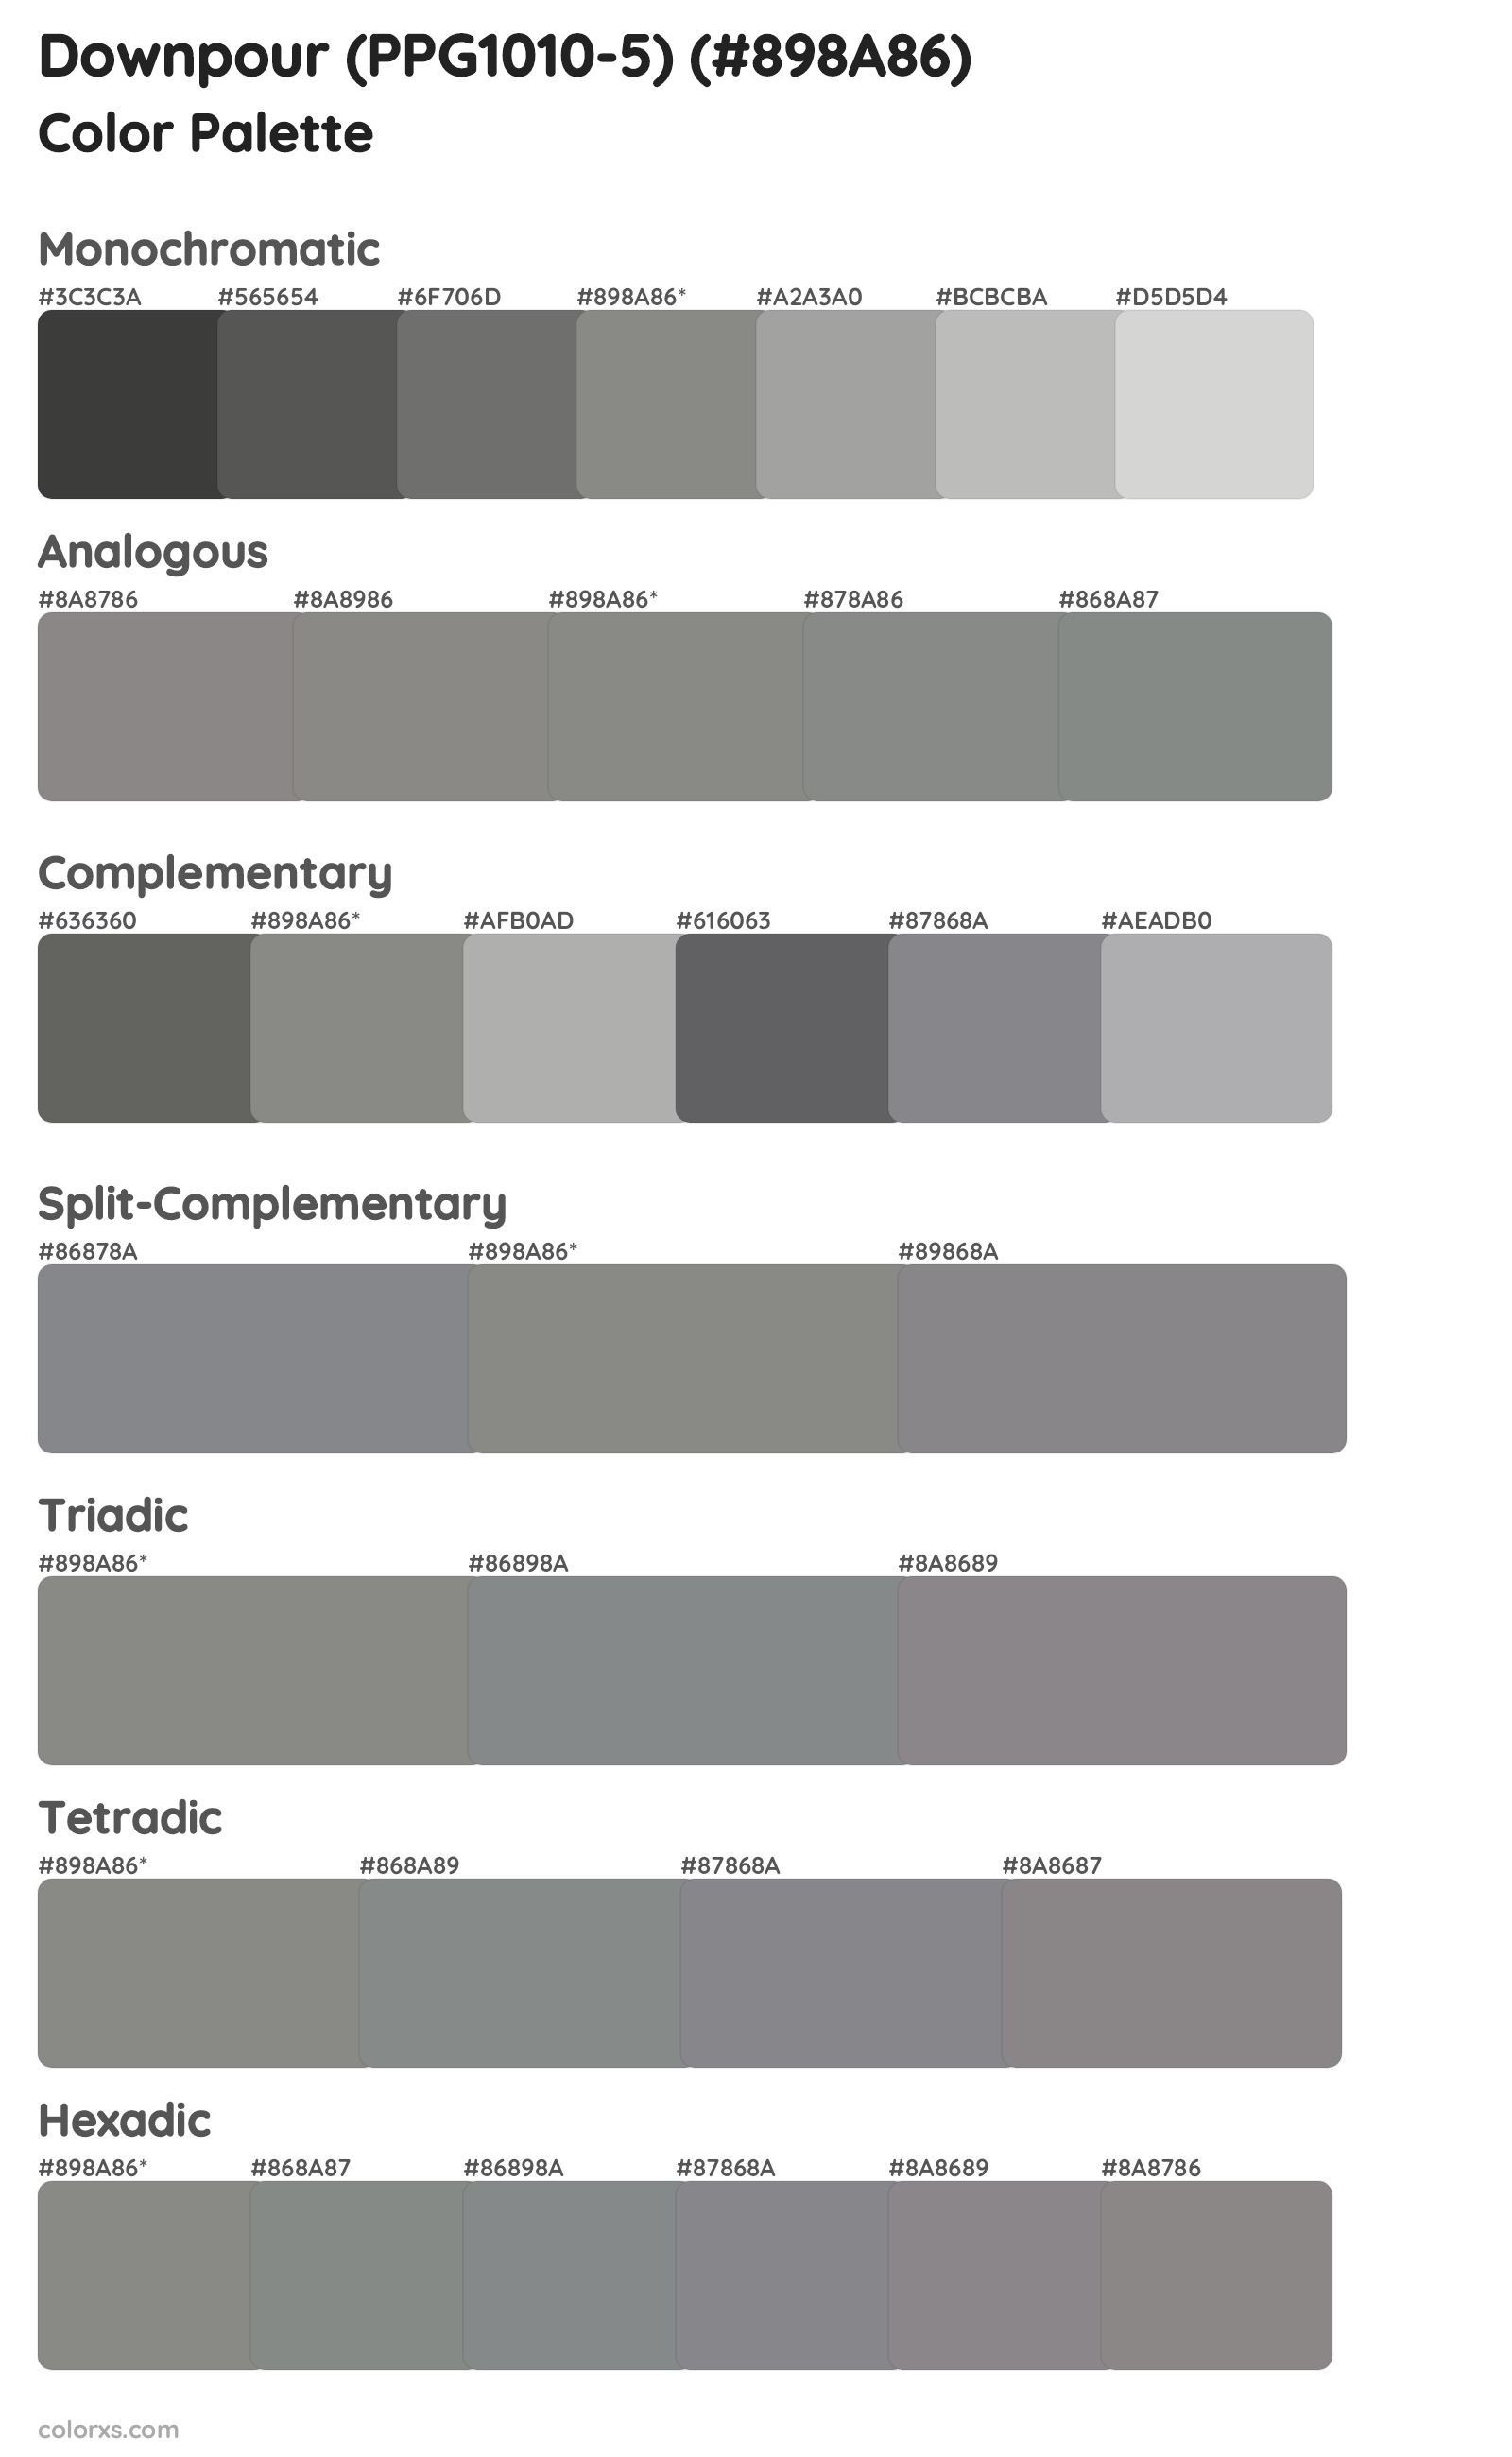 Downpour (PPG1010-5) Color Scheme Palettes